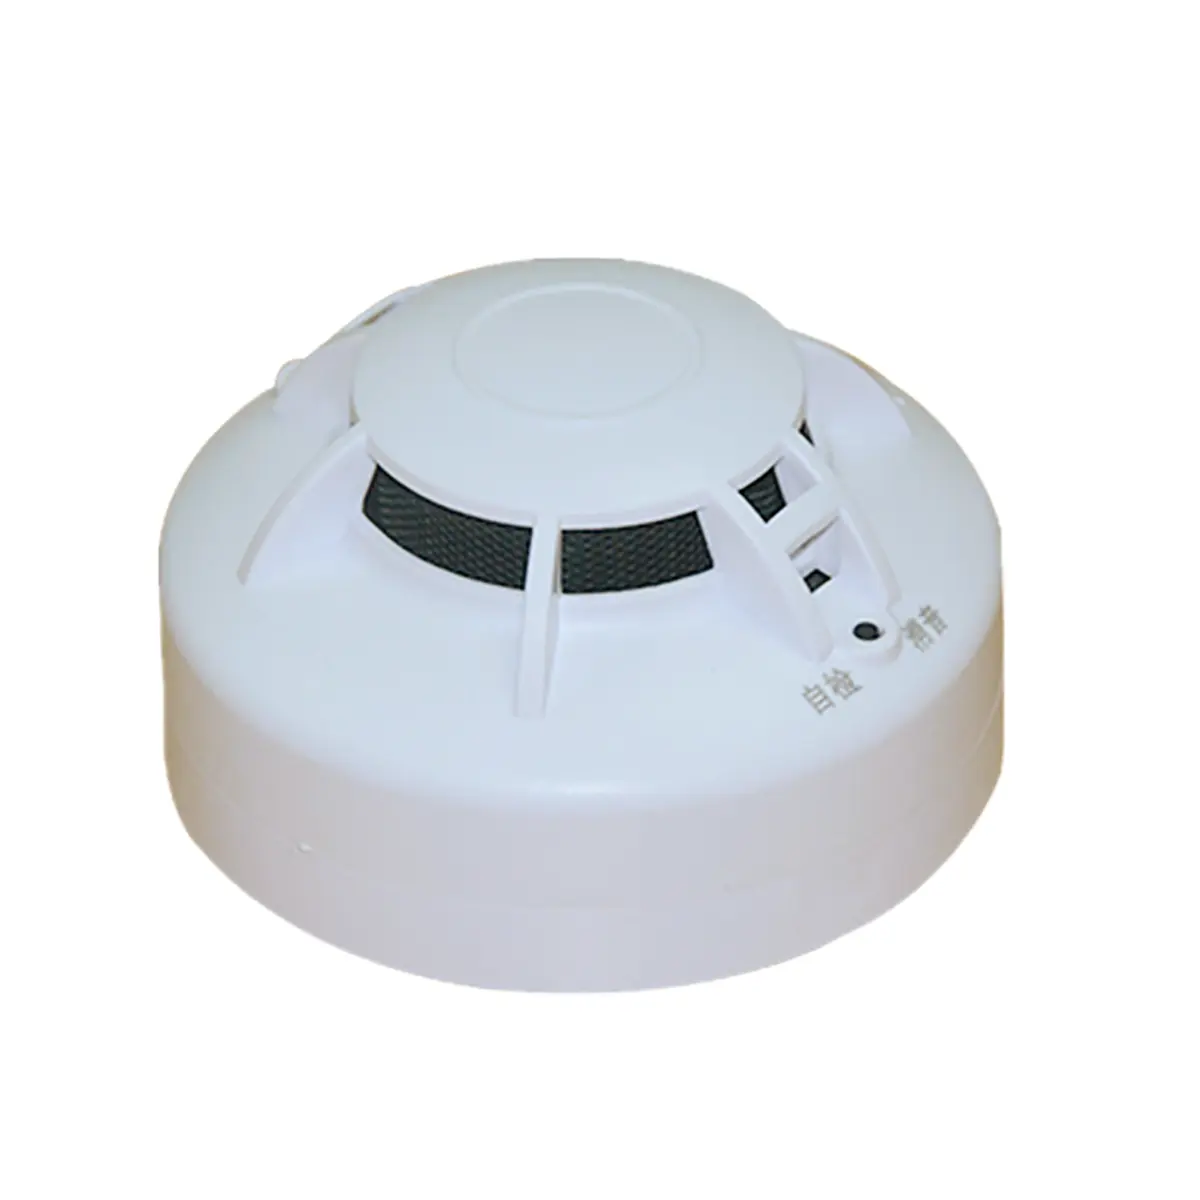 Suitable für häuser geschäfte 360-grad sensor erkennung selbst-inspektion fordert Independent rauchmelder alarm system